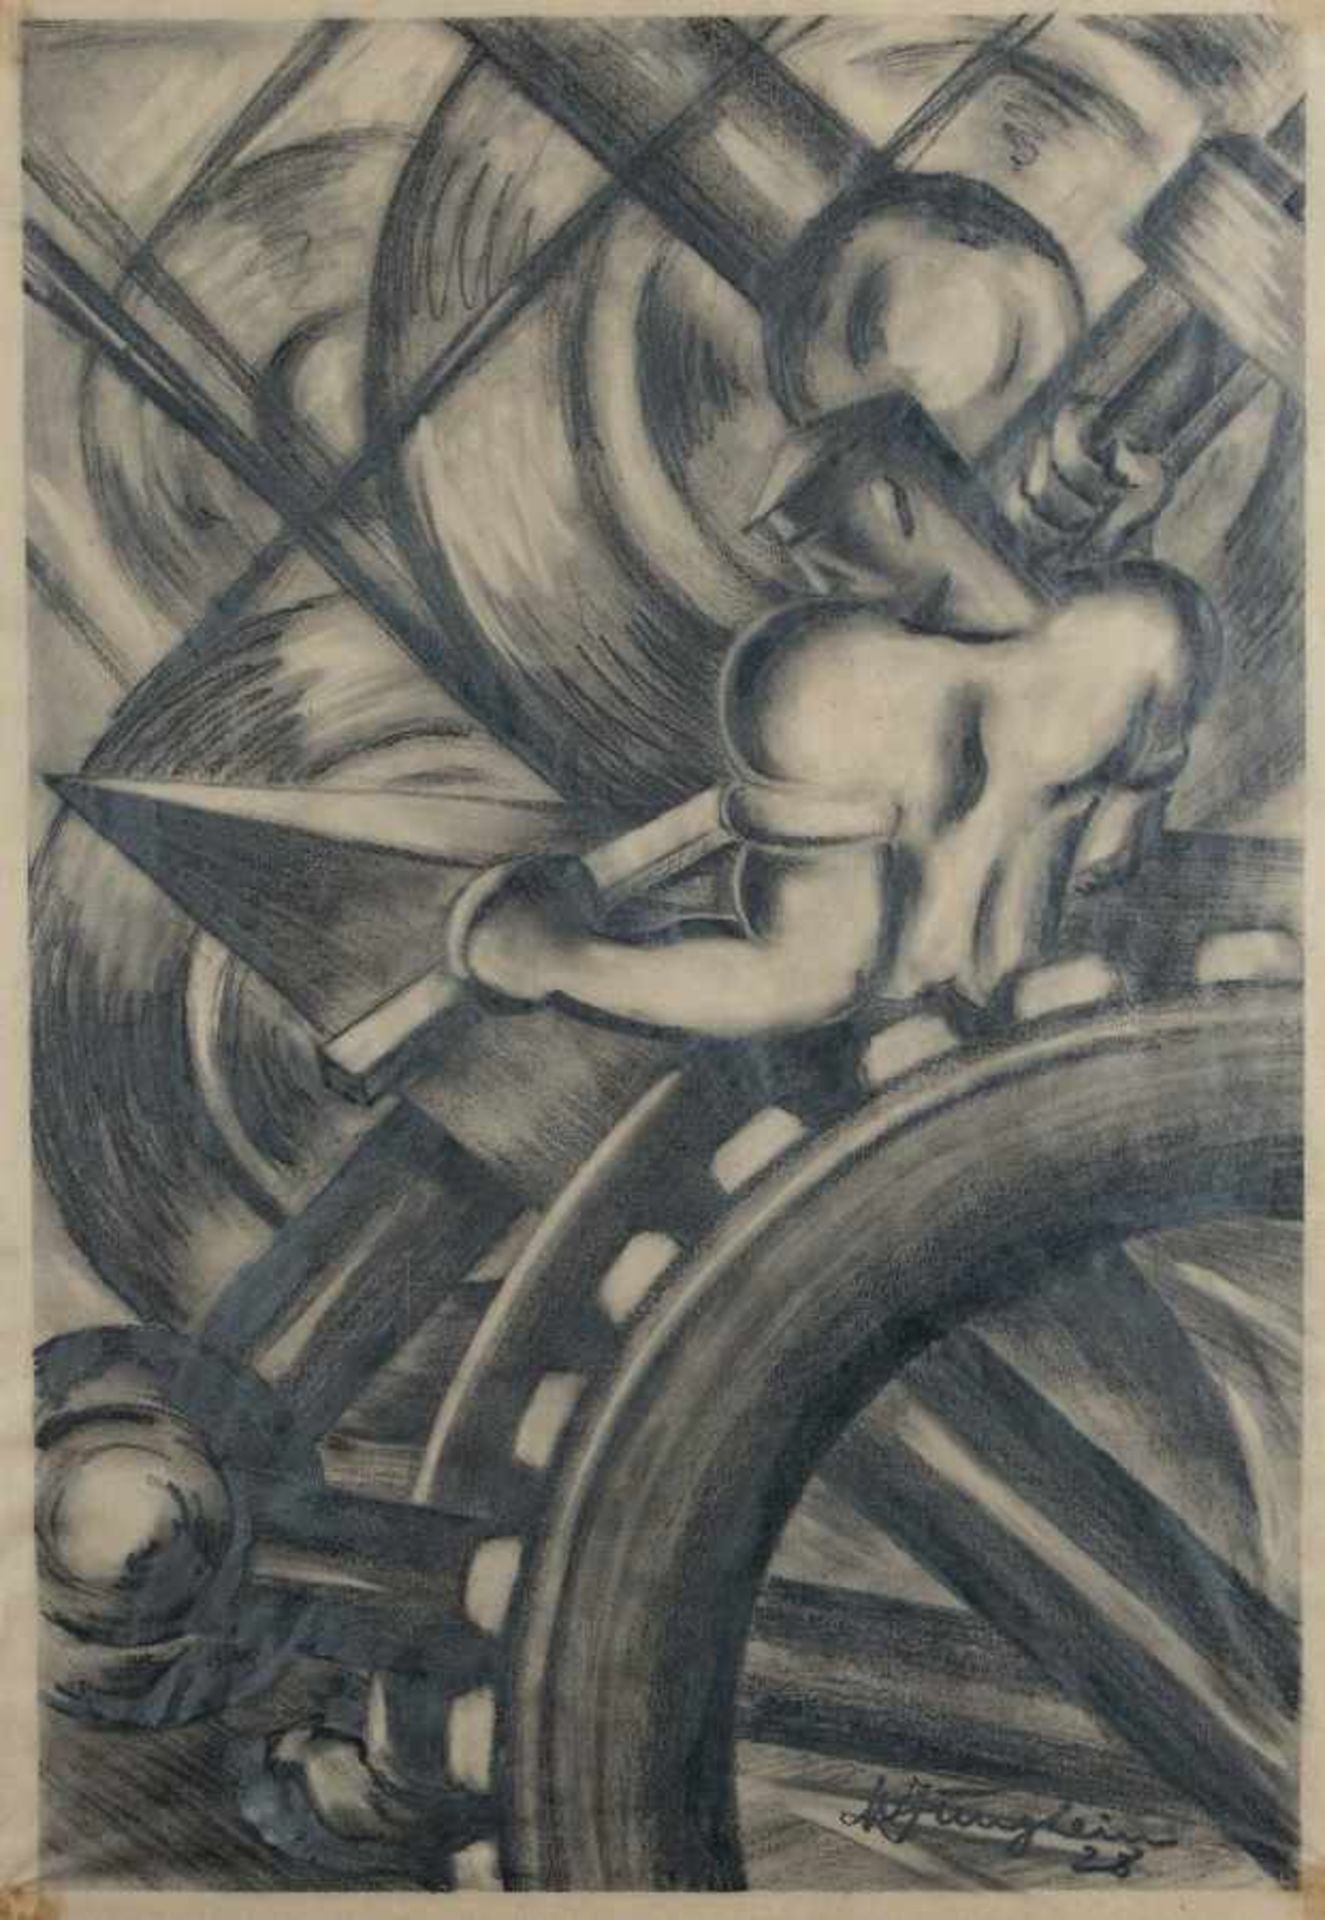 Michael JungheimDüsseldorf 1896 - 1970Worker in the machine worldPencil on paper; H 520 mm, W 361